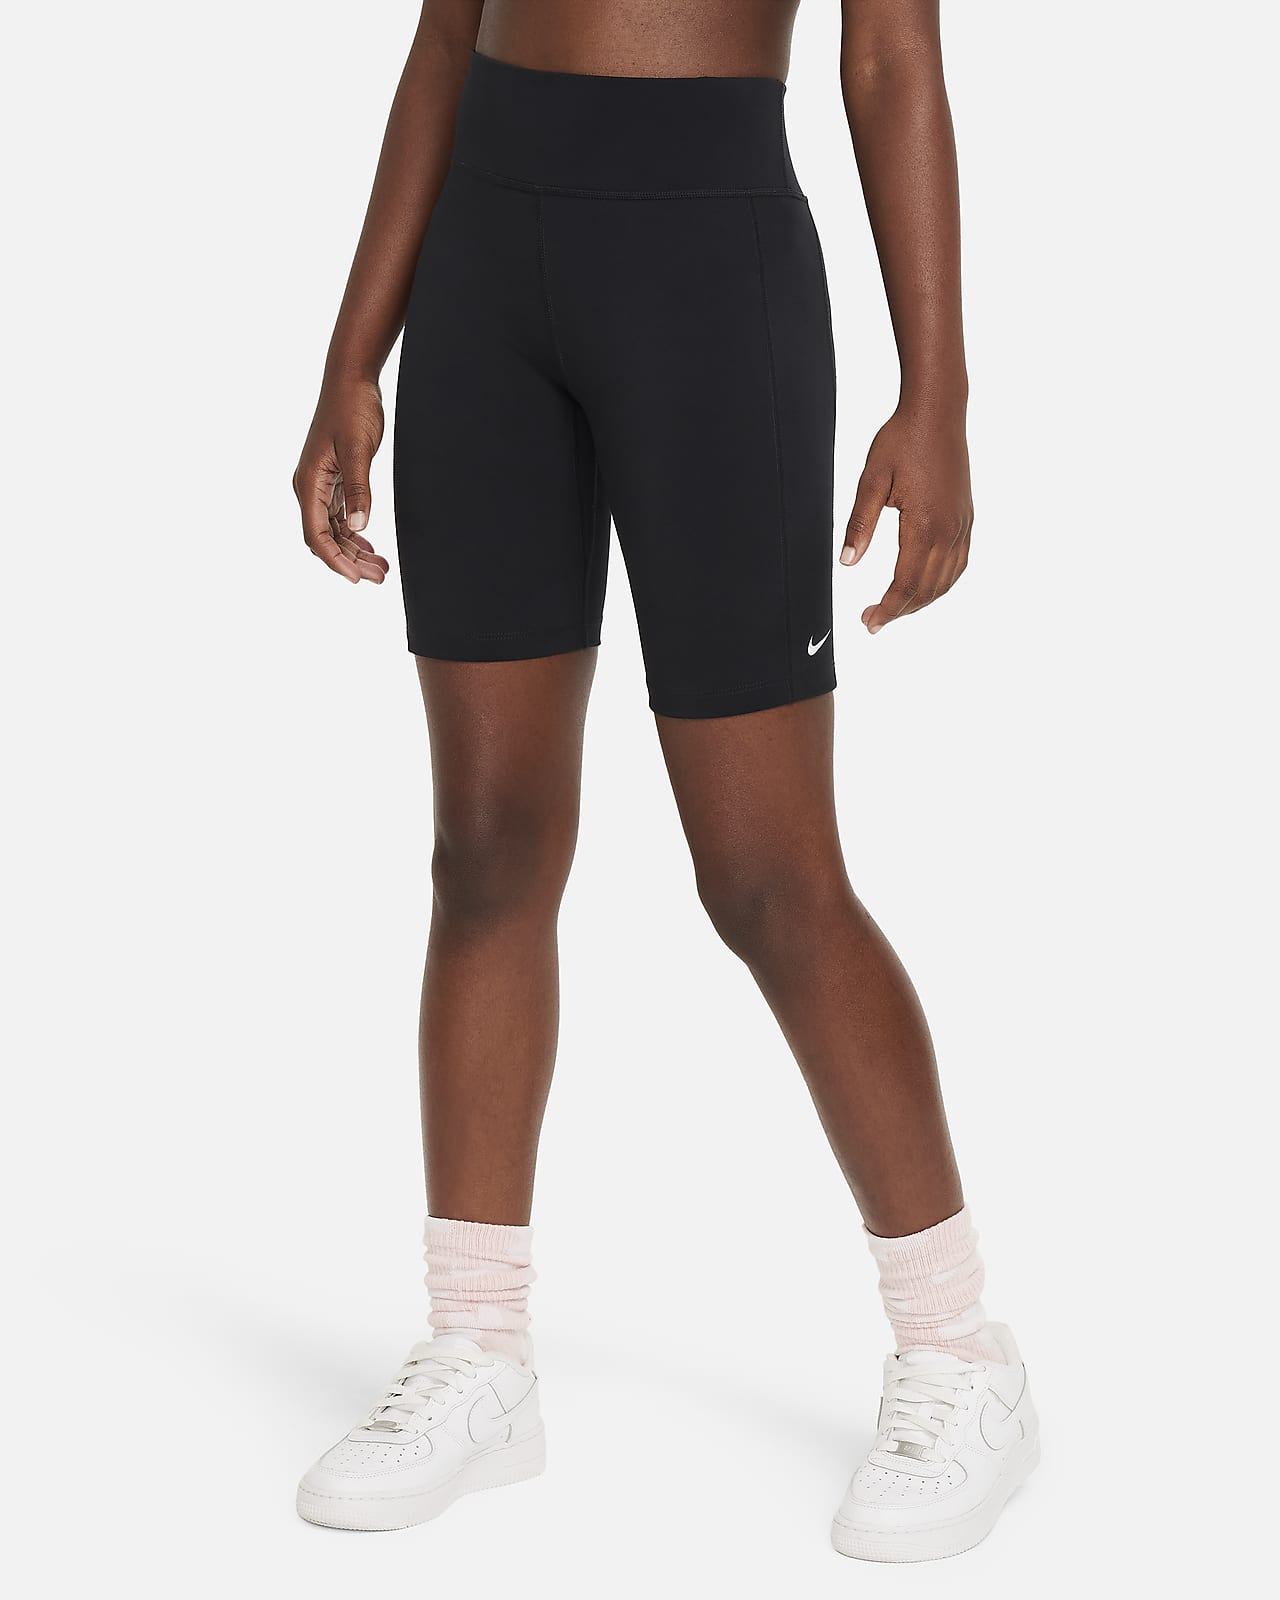 Nike One Leak Protection: Period Pantalón corto de ciclismo de talle alto de 18 cm - Niña